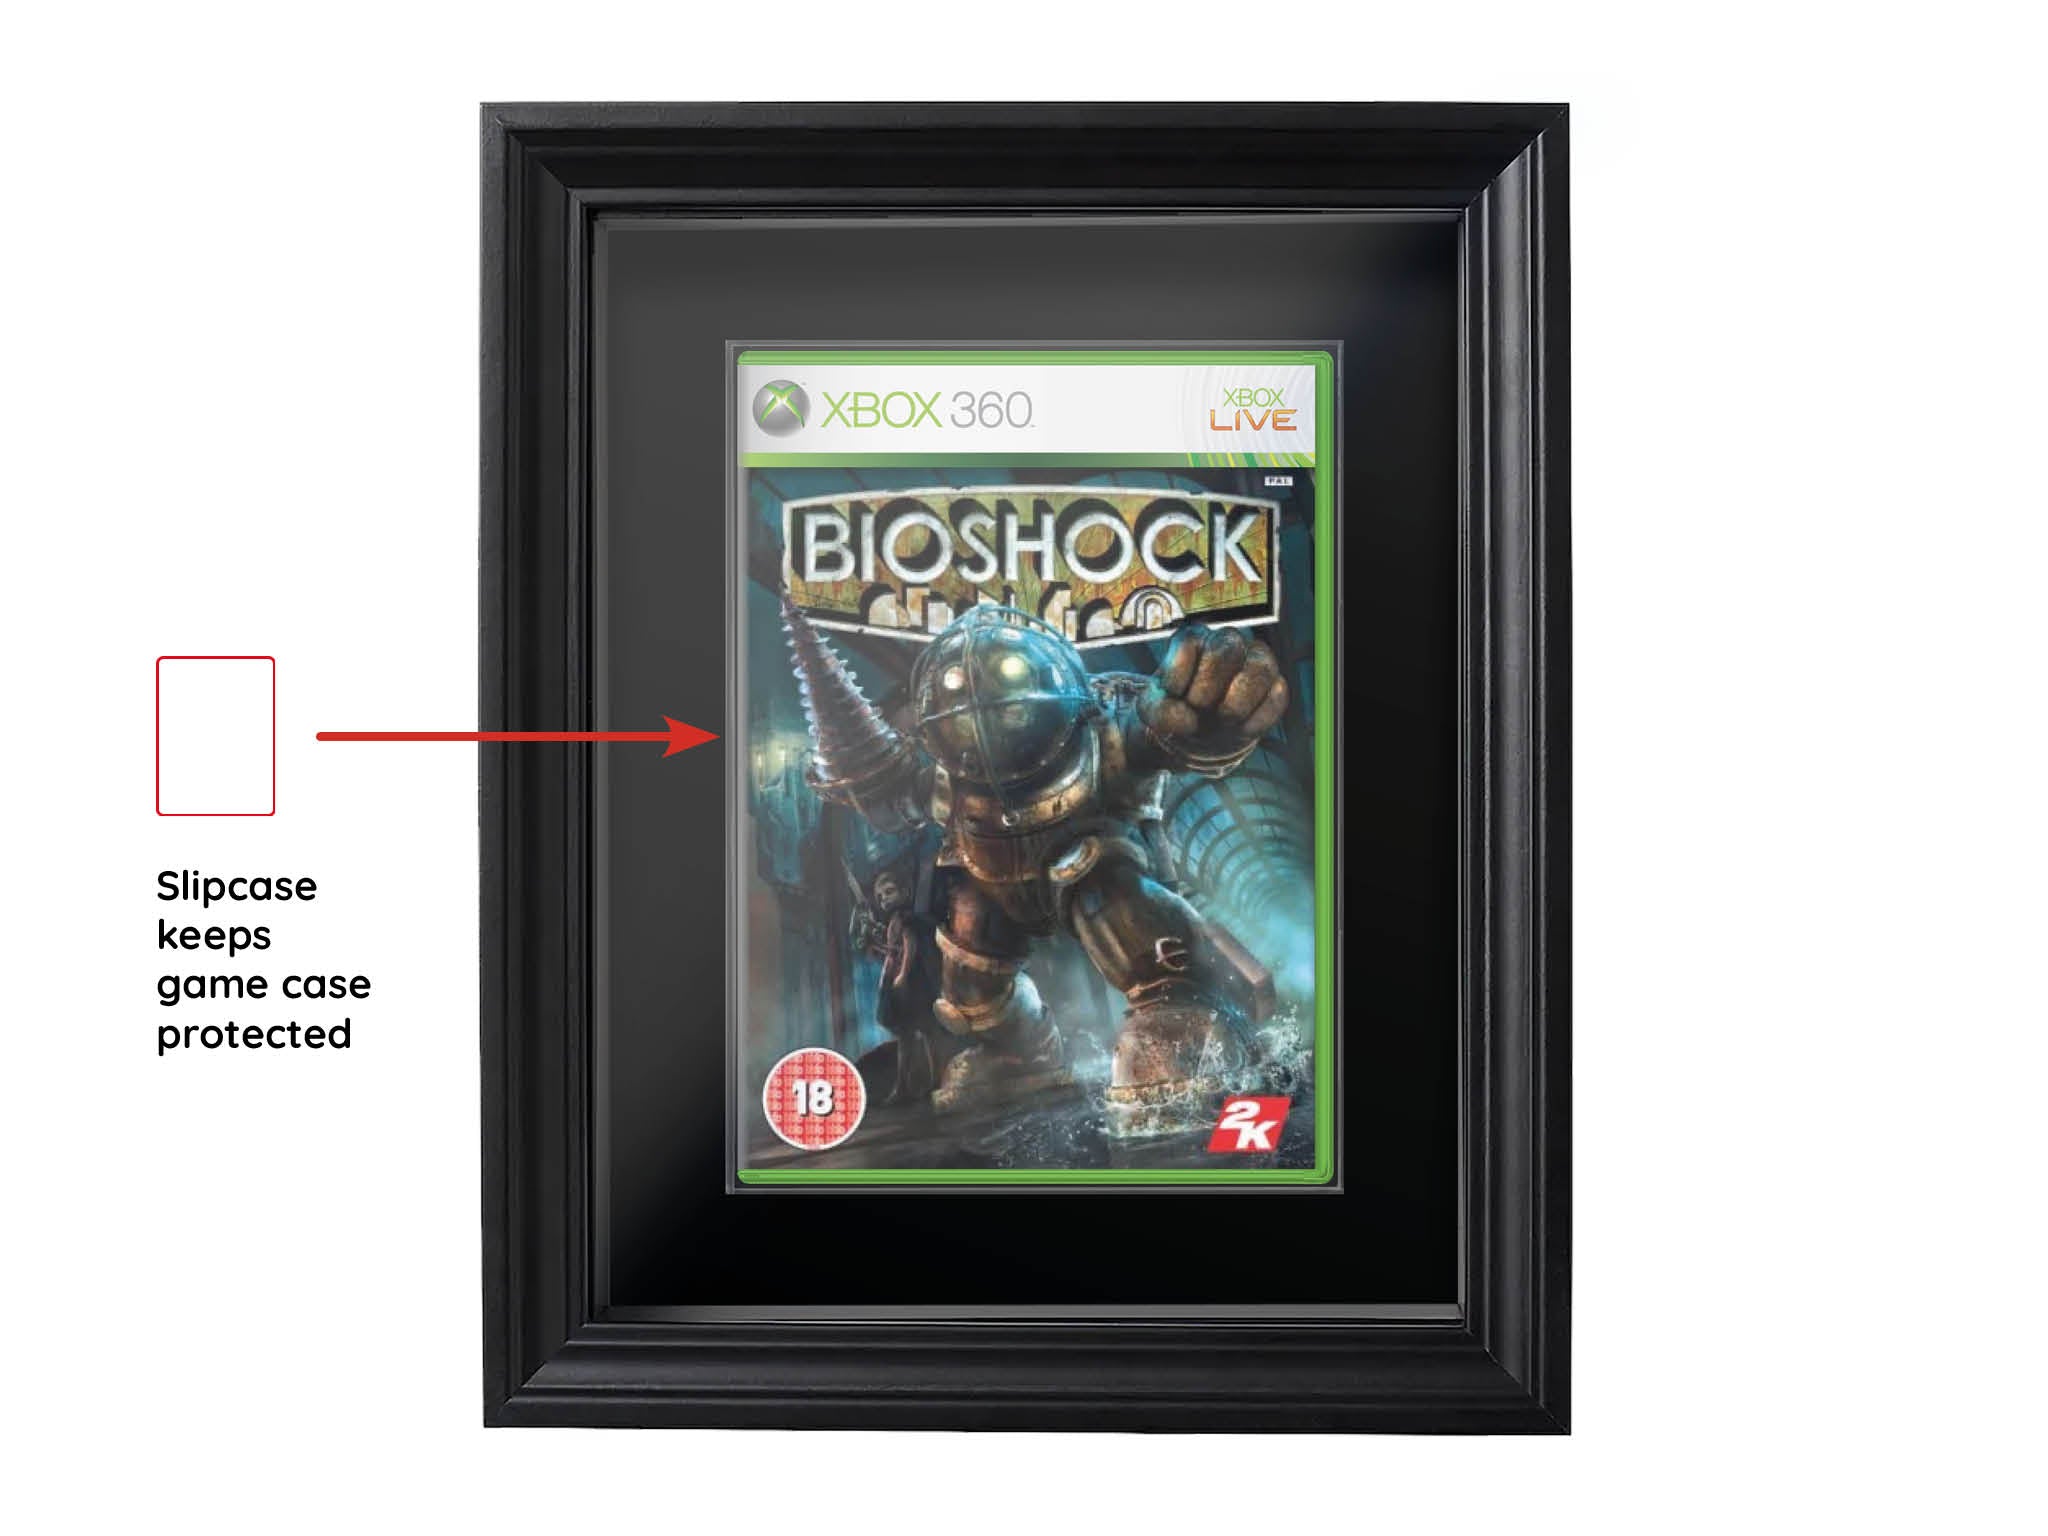 Bioshock (Xbox 360) Showcase Range Framed Game - Frame-A-Game